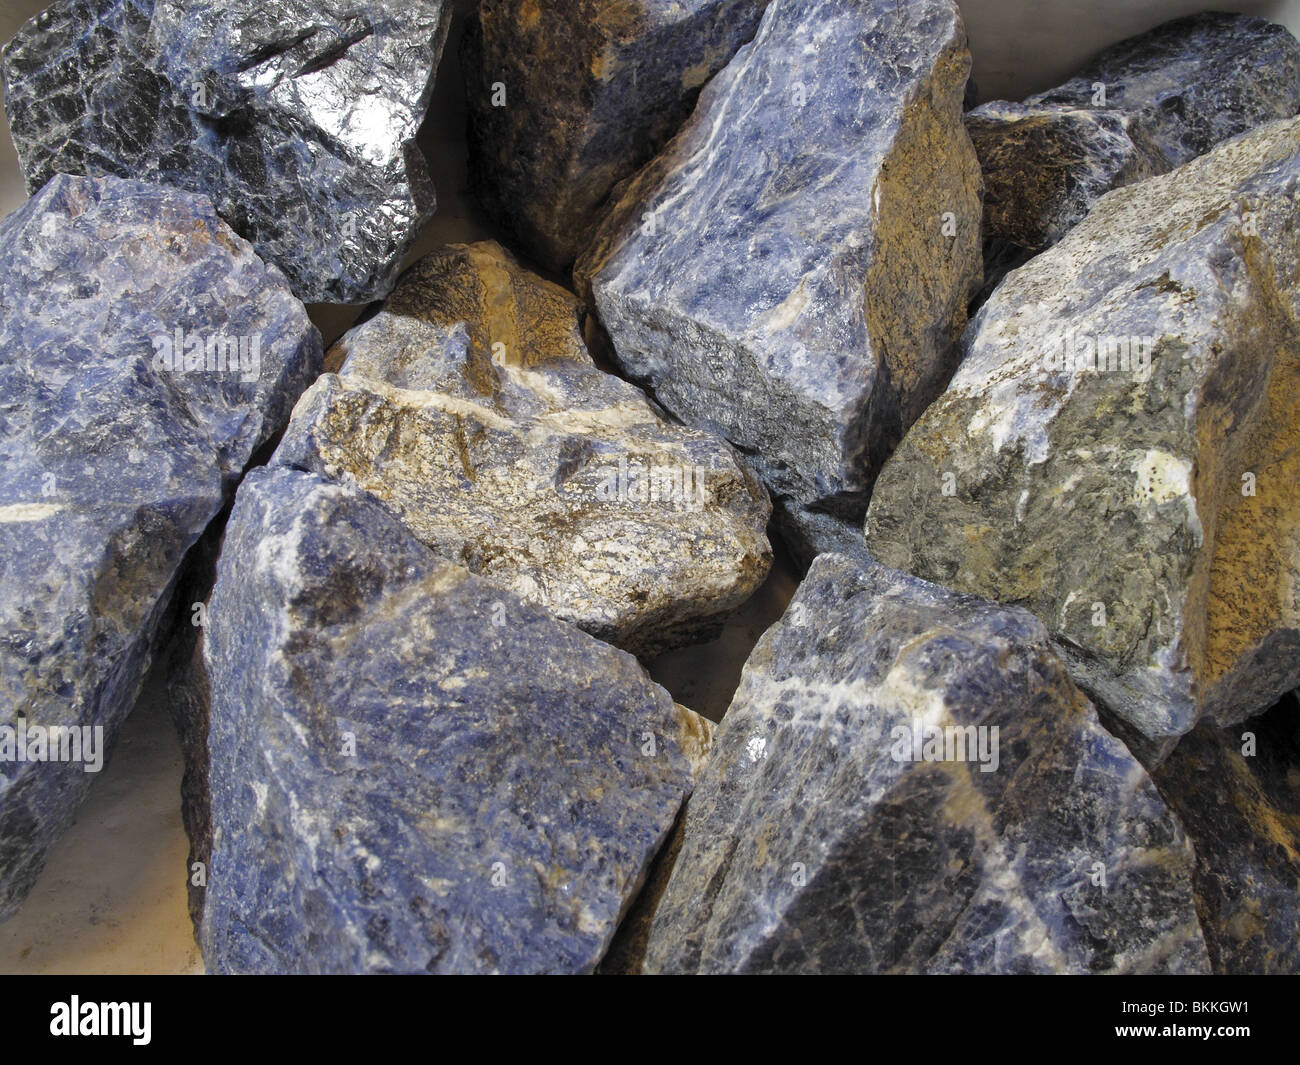 Sammlung von rohen Halbedelsteinen Stein Mineral Sodalith (Natrium-Aluminium-Silikat-Chlorid) Stockfoto